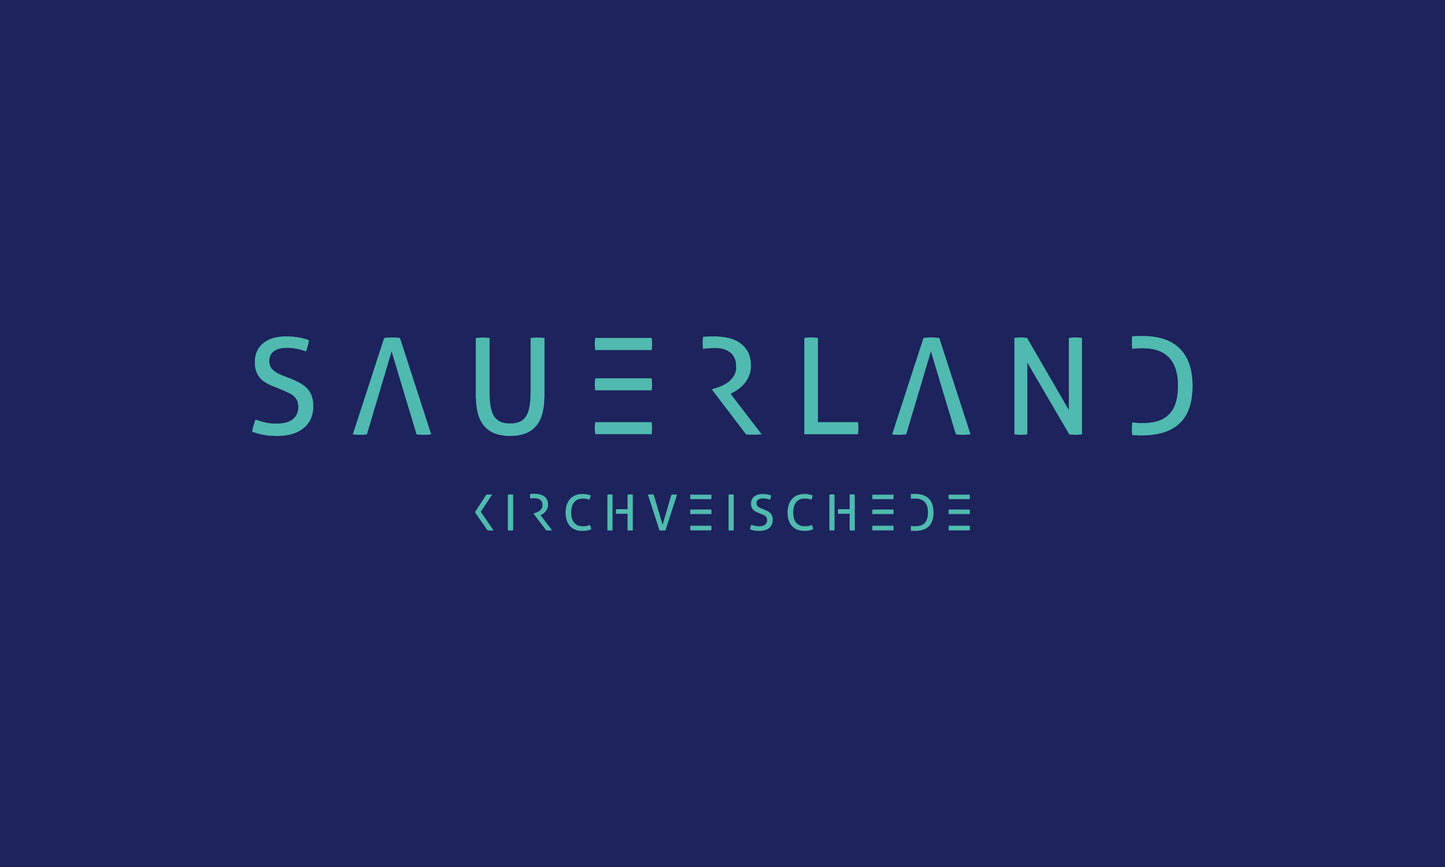 Sauerland Fahne in dunkelblau mit Türkise Aufdruck Sauerland Kirchveischede